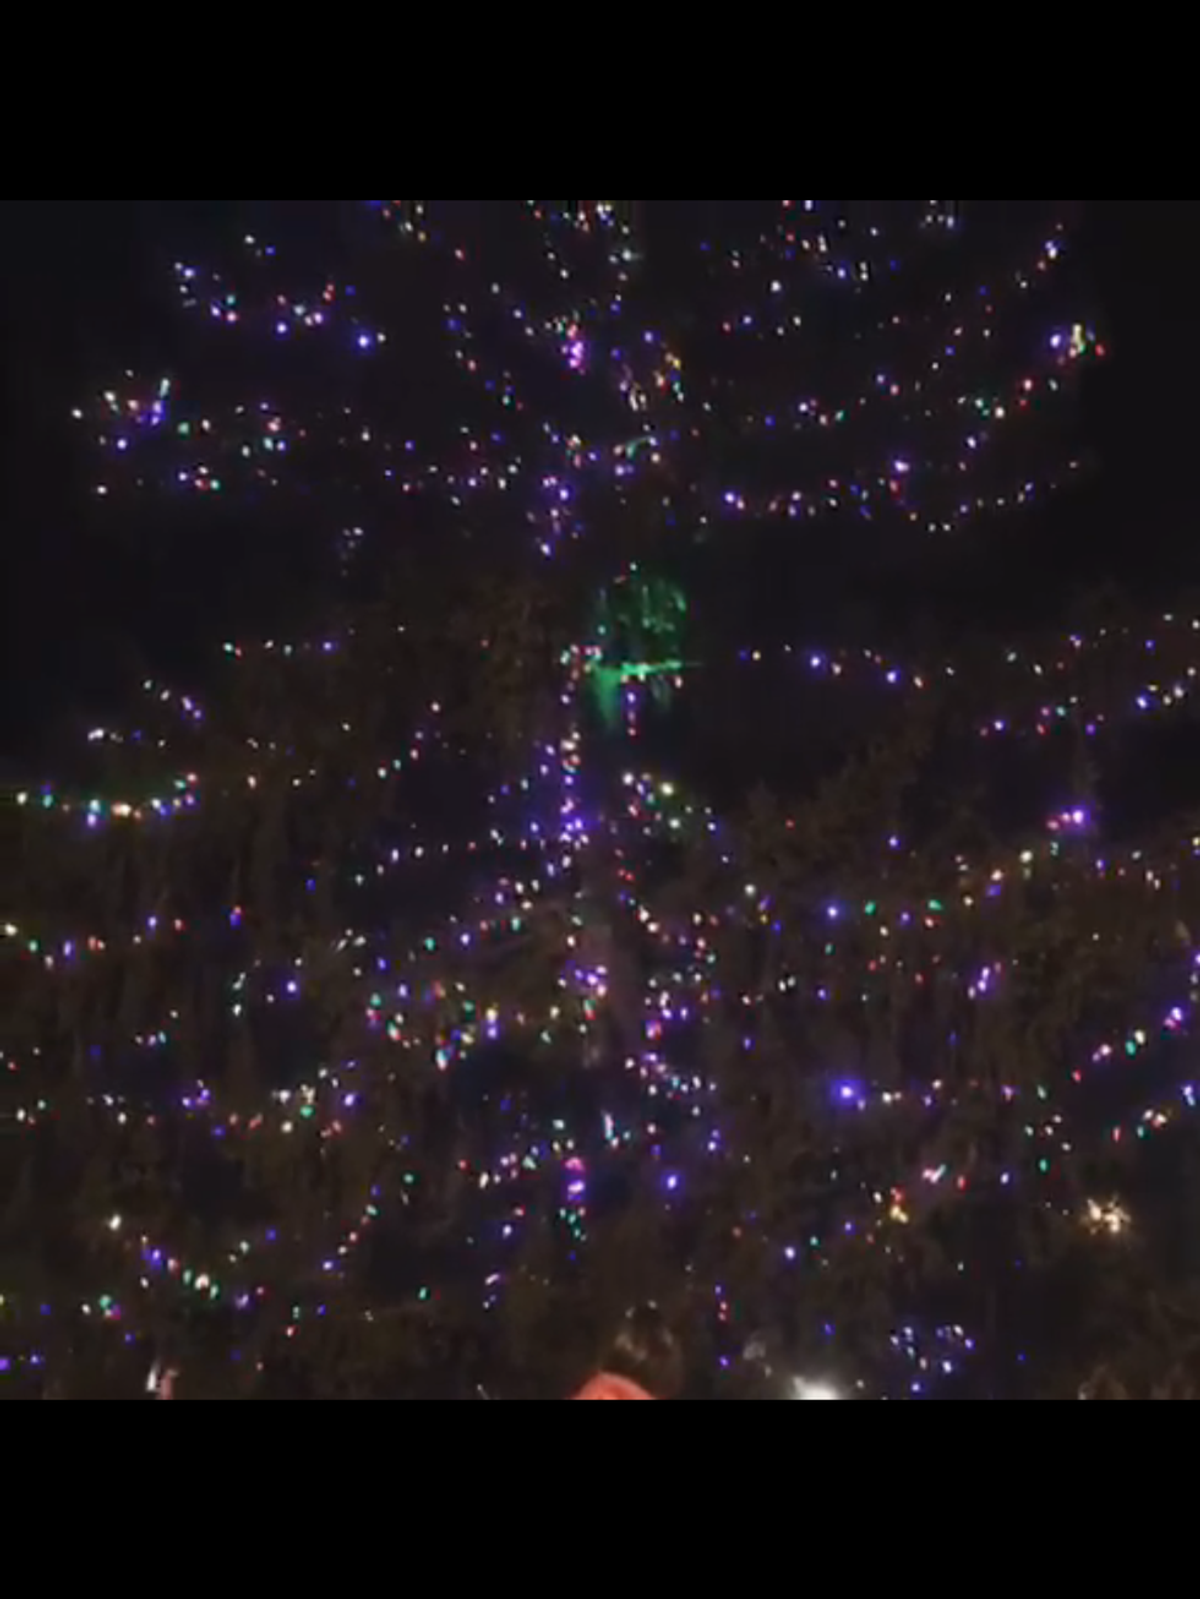 The magic of a Christmas tree lighting